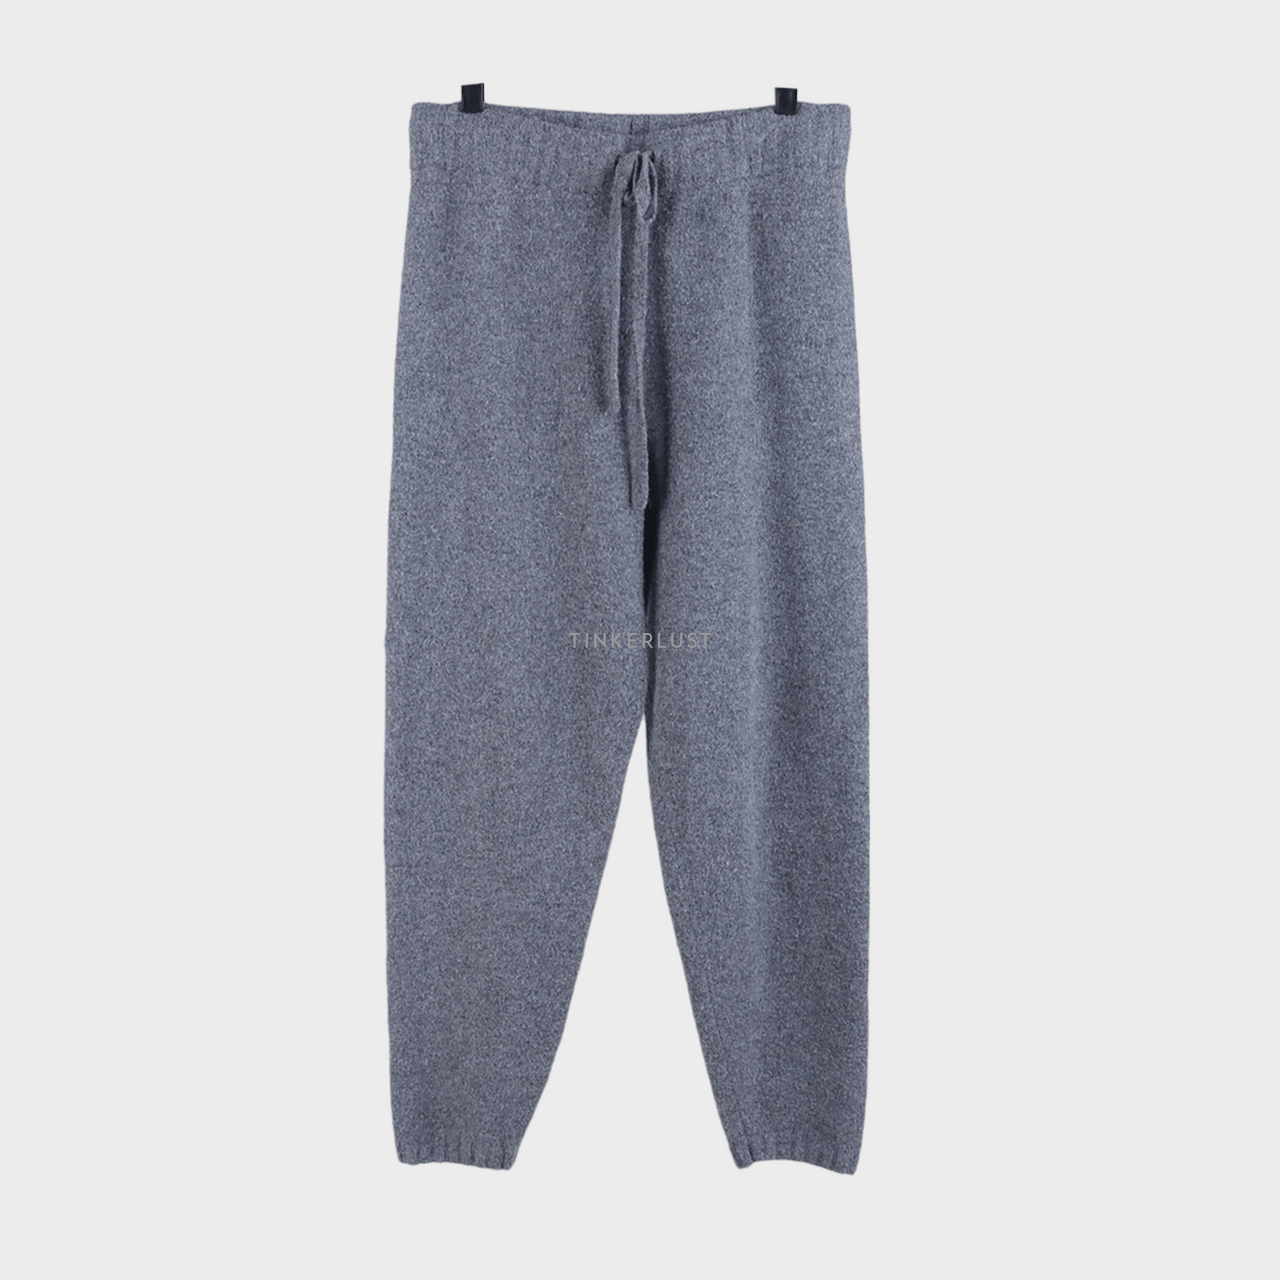 H&M Grey Long Pants